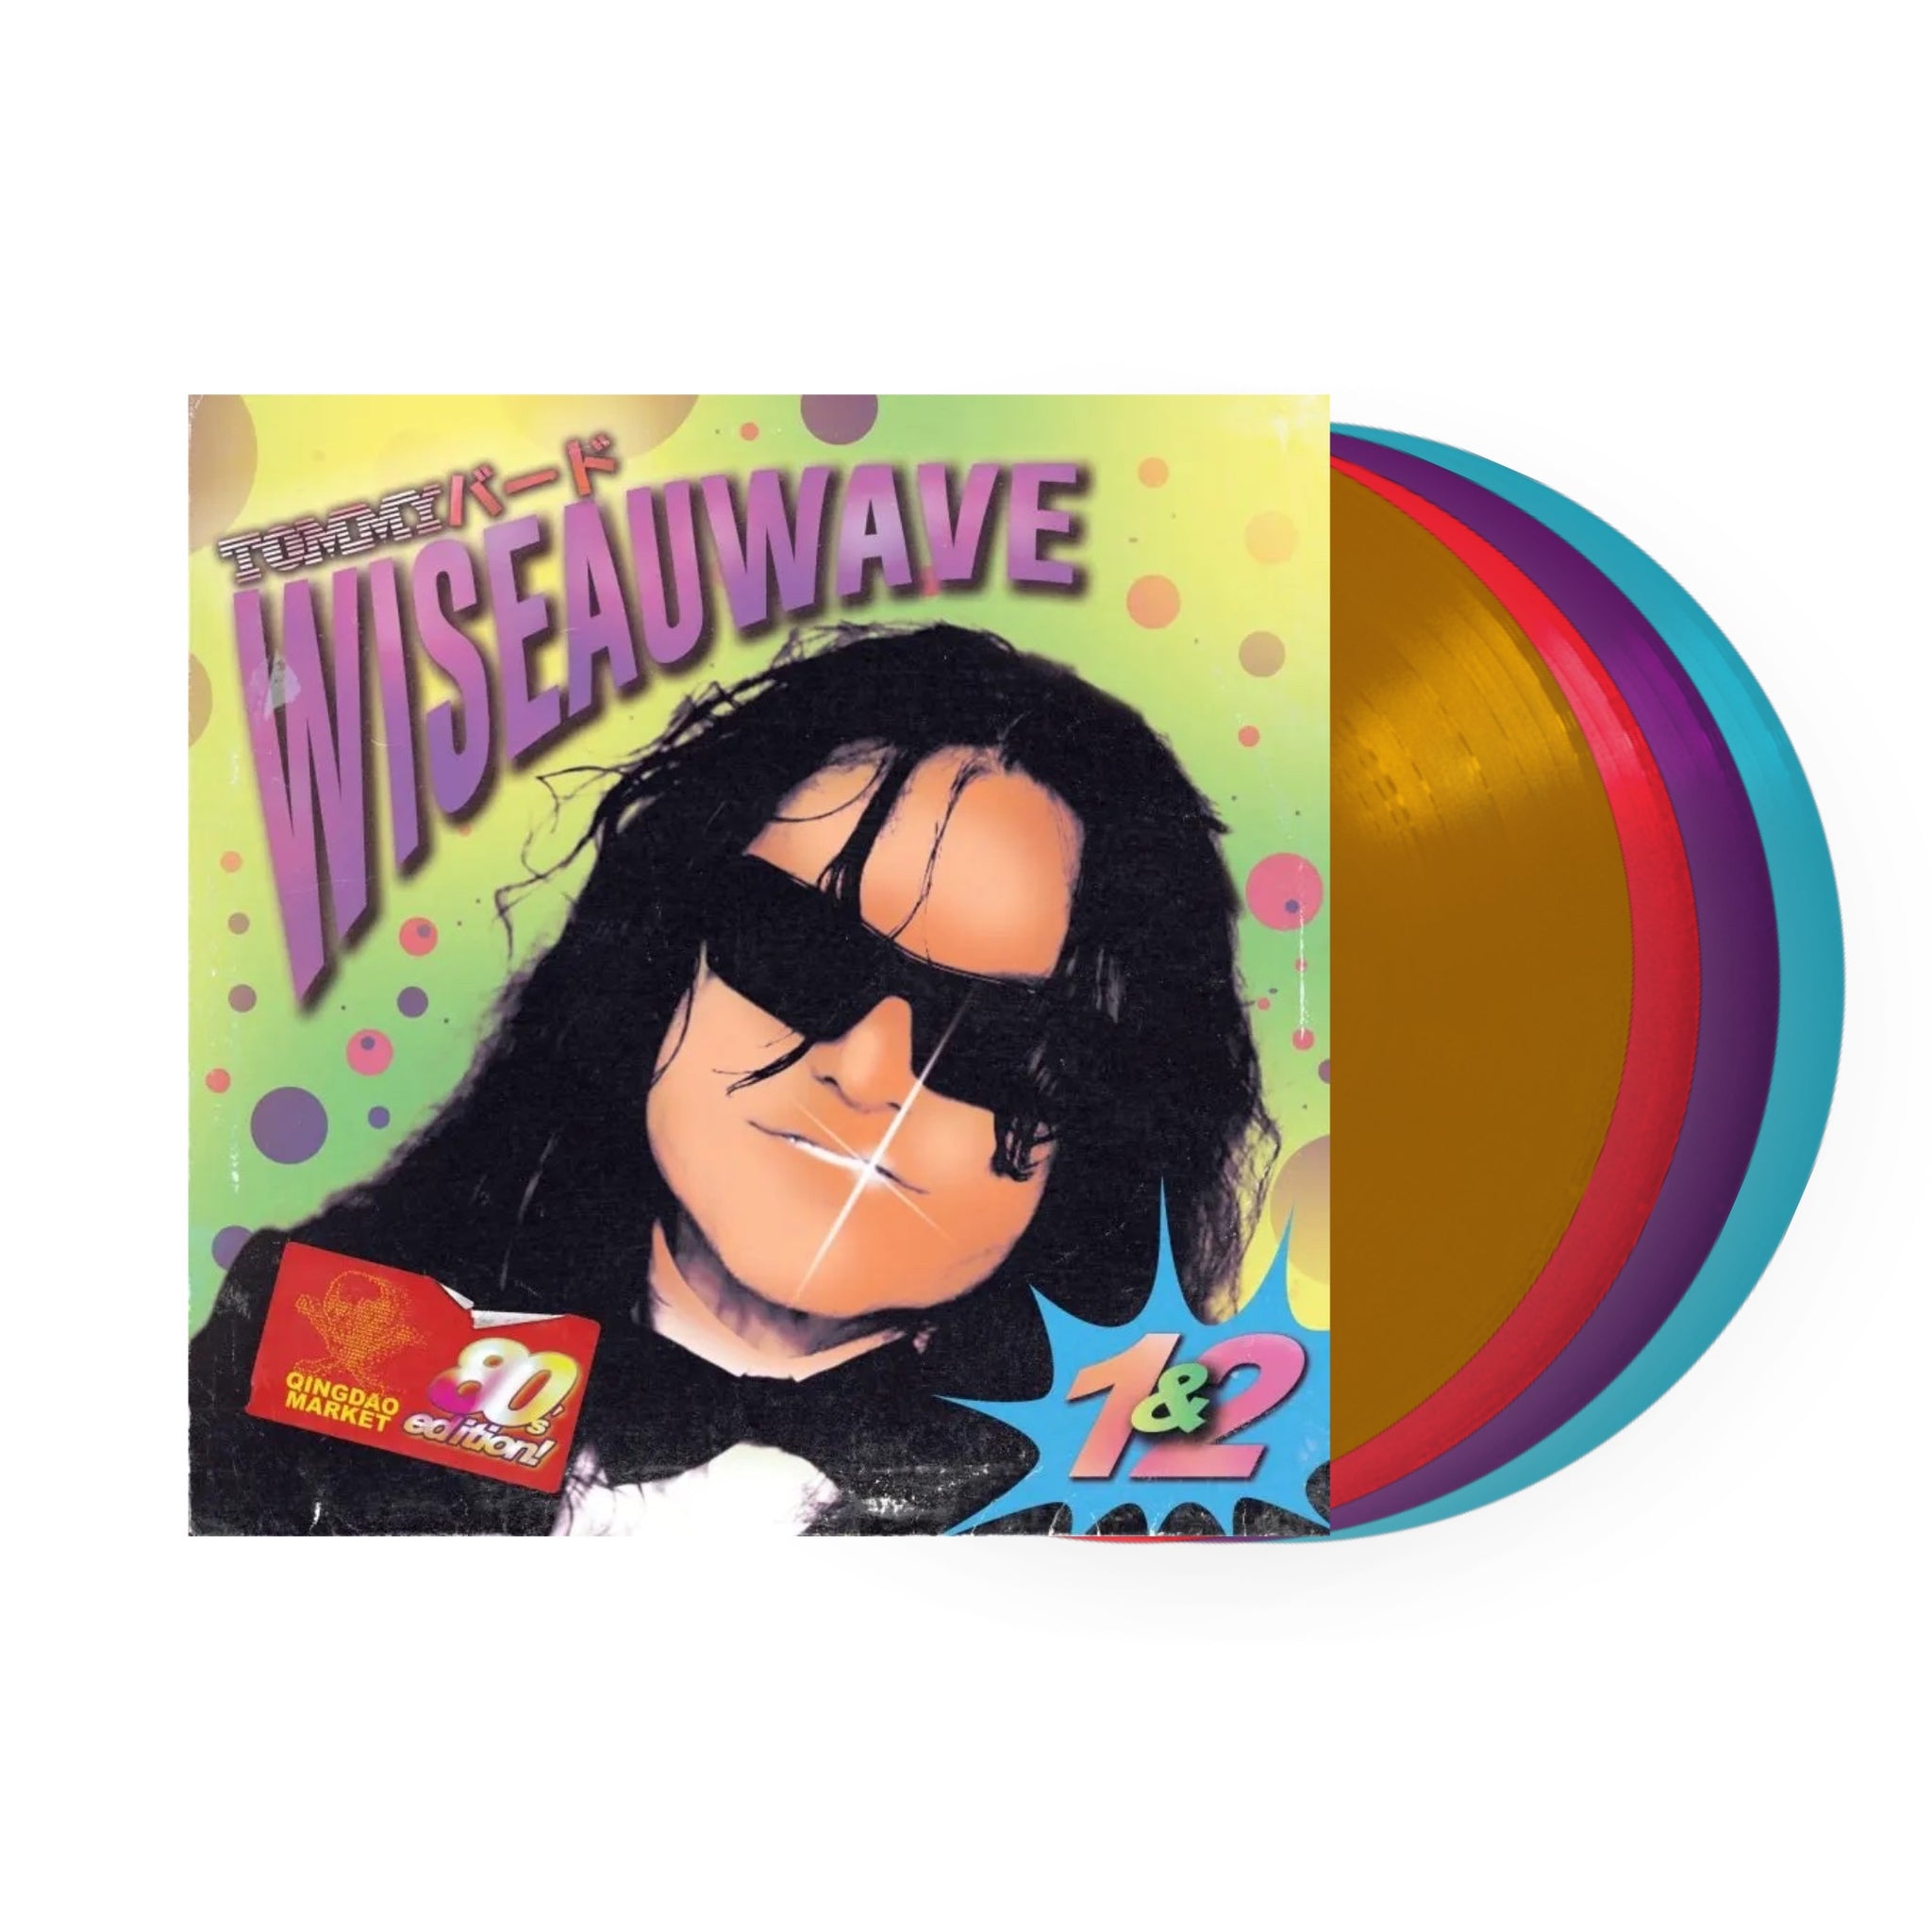 TOMMYバード - 懷斯波 Wiseau Wave 1  懷斯波2 Wiseau Wave 2 LP (Random Color Vinyl)